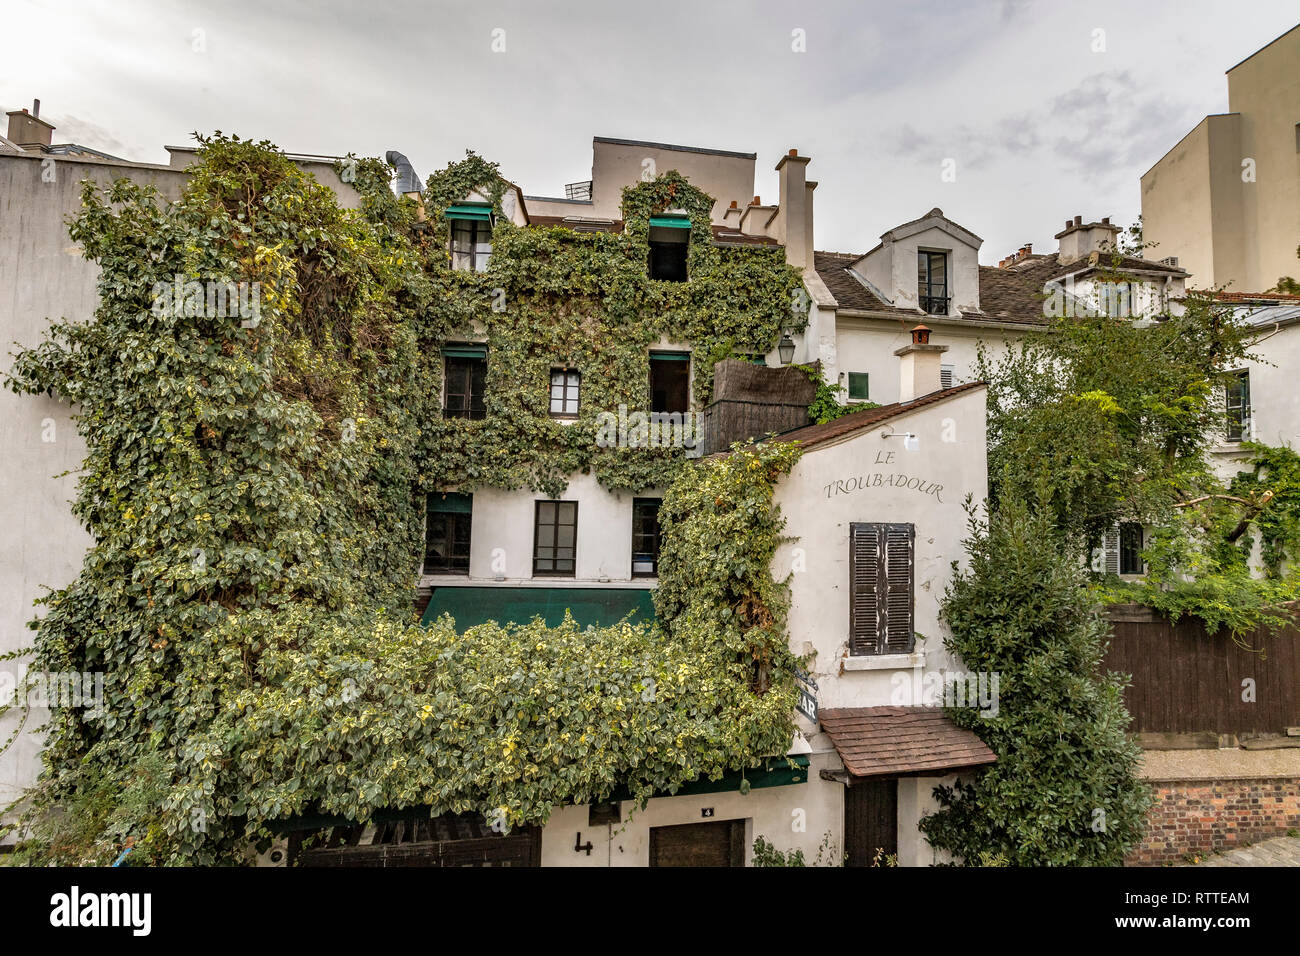 Ivy crescente sul muro di una casa di Montmartre che alloggia il Le Troubadour ristorante cafe, Parigi, Francia Foto Stock